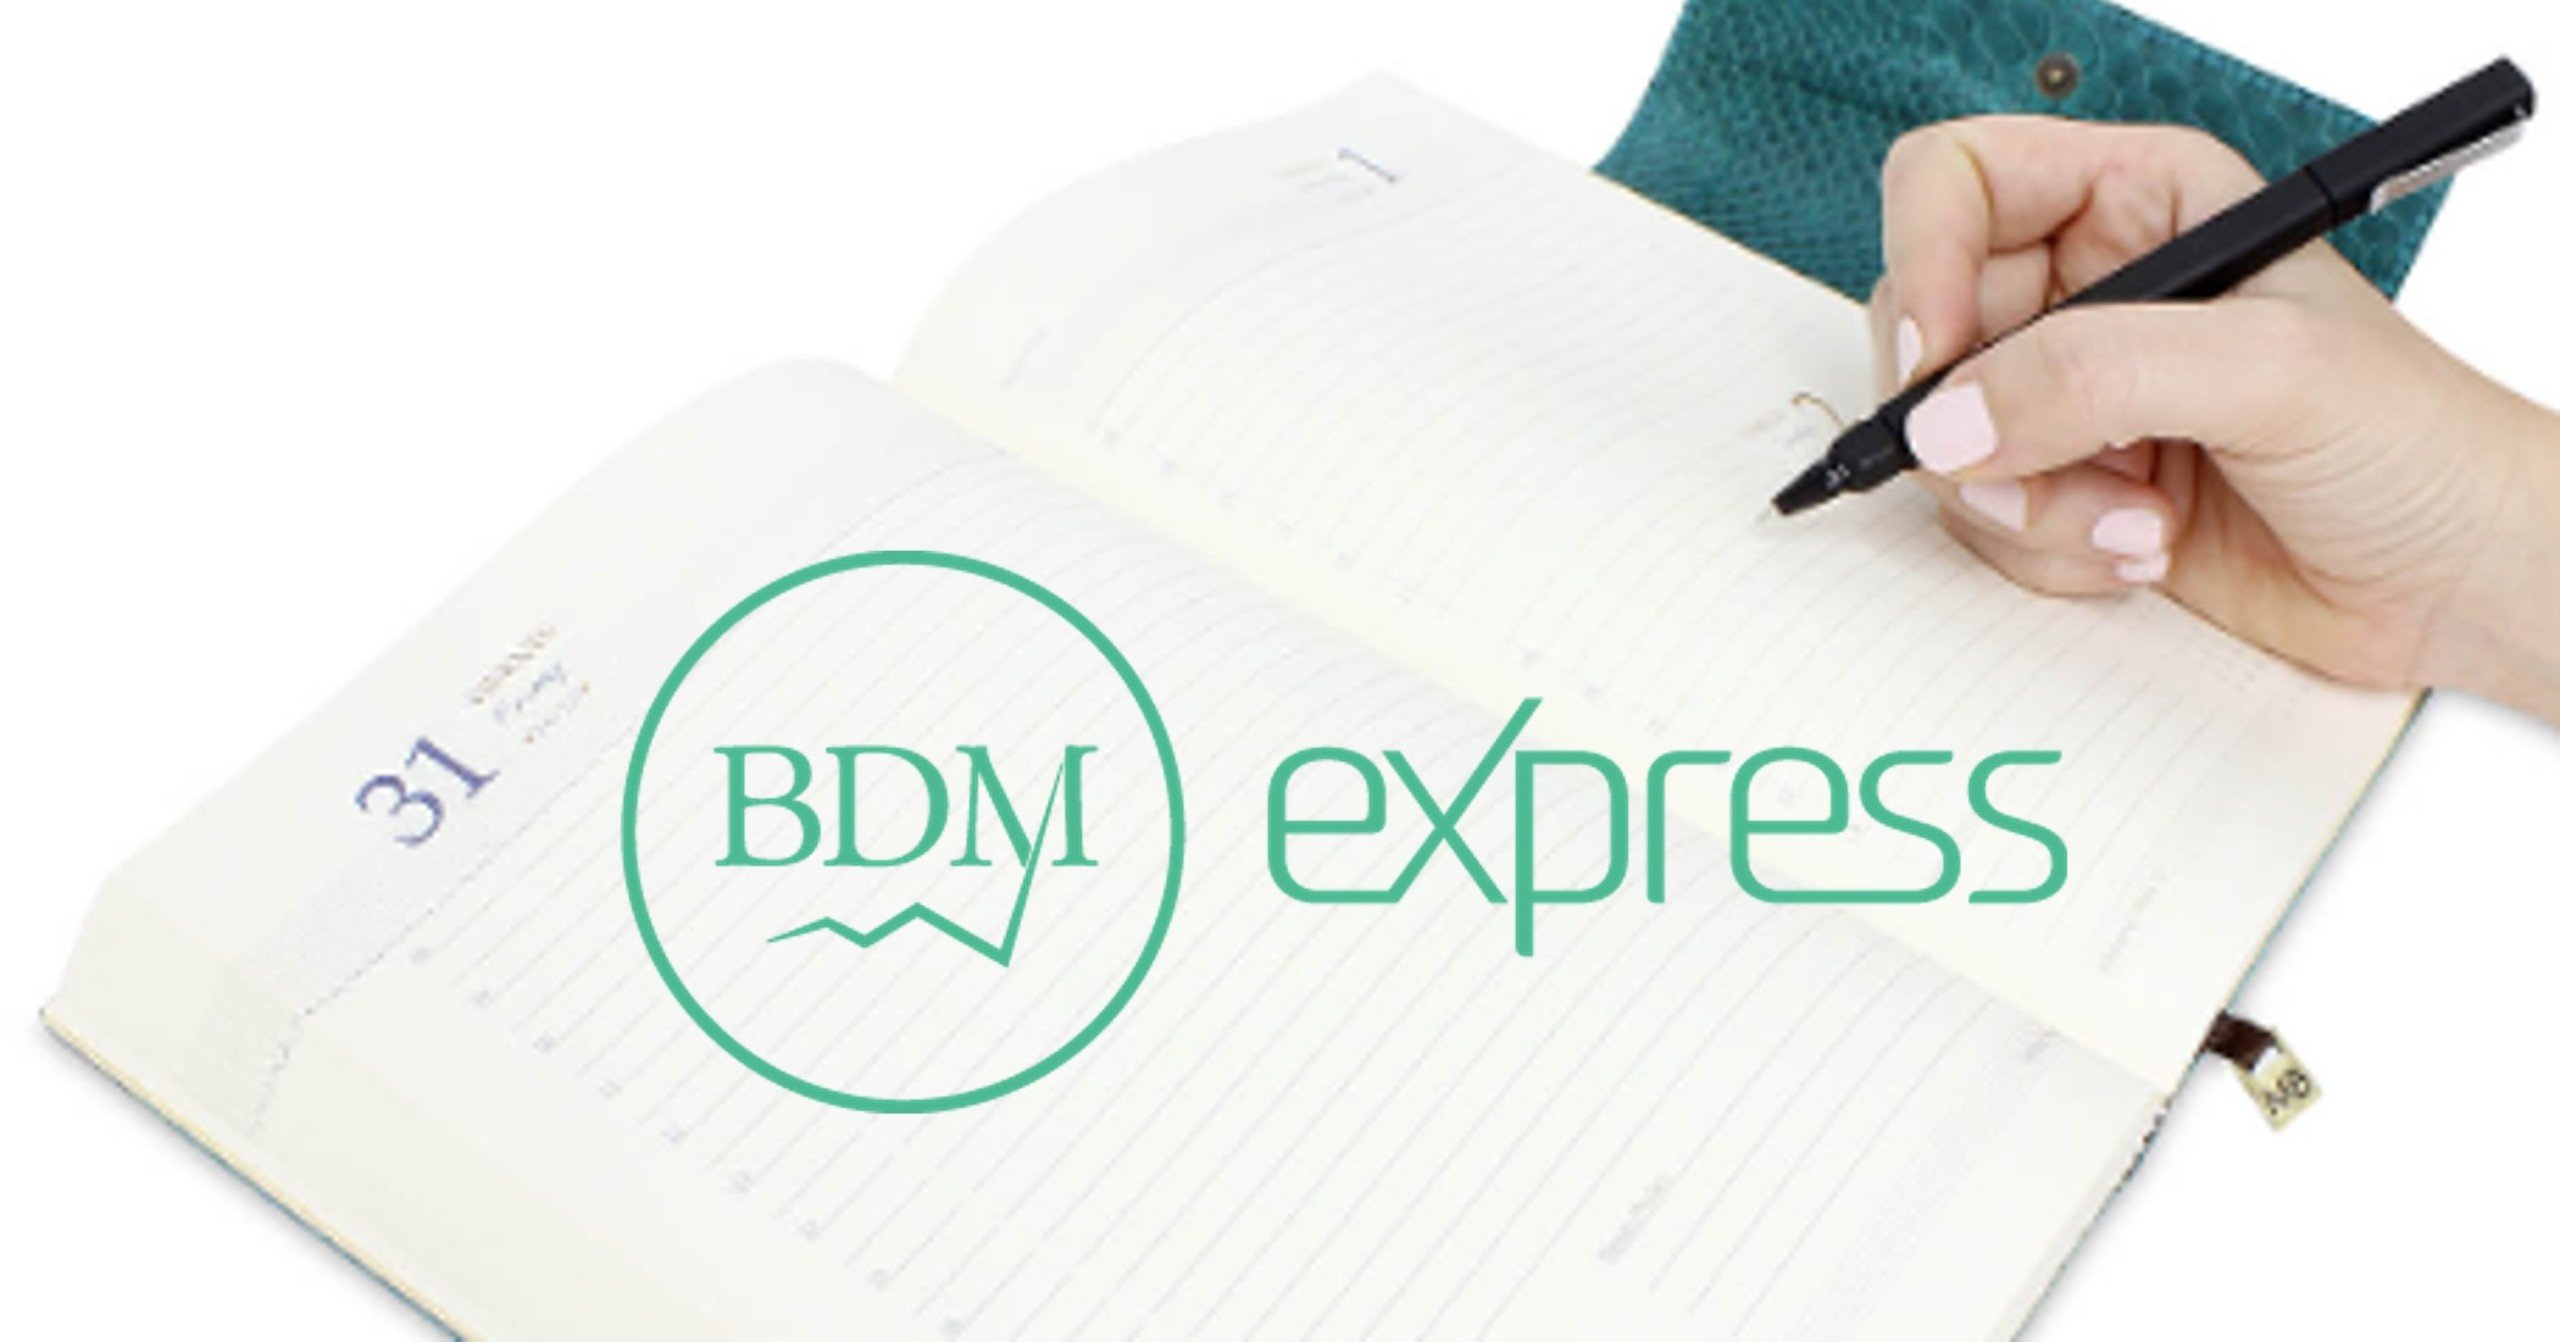 BDM Express: Mudança das metas é recebida com pessimismo